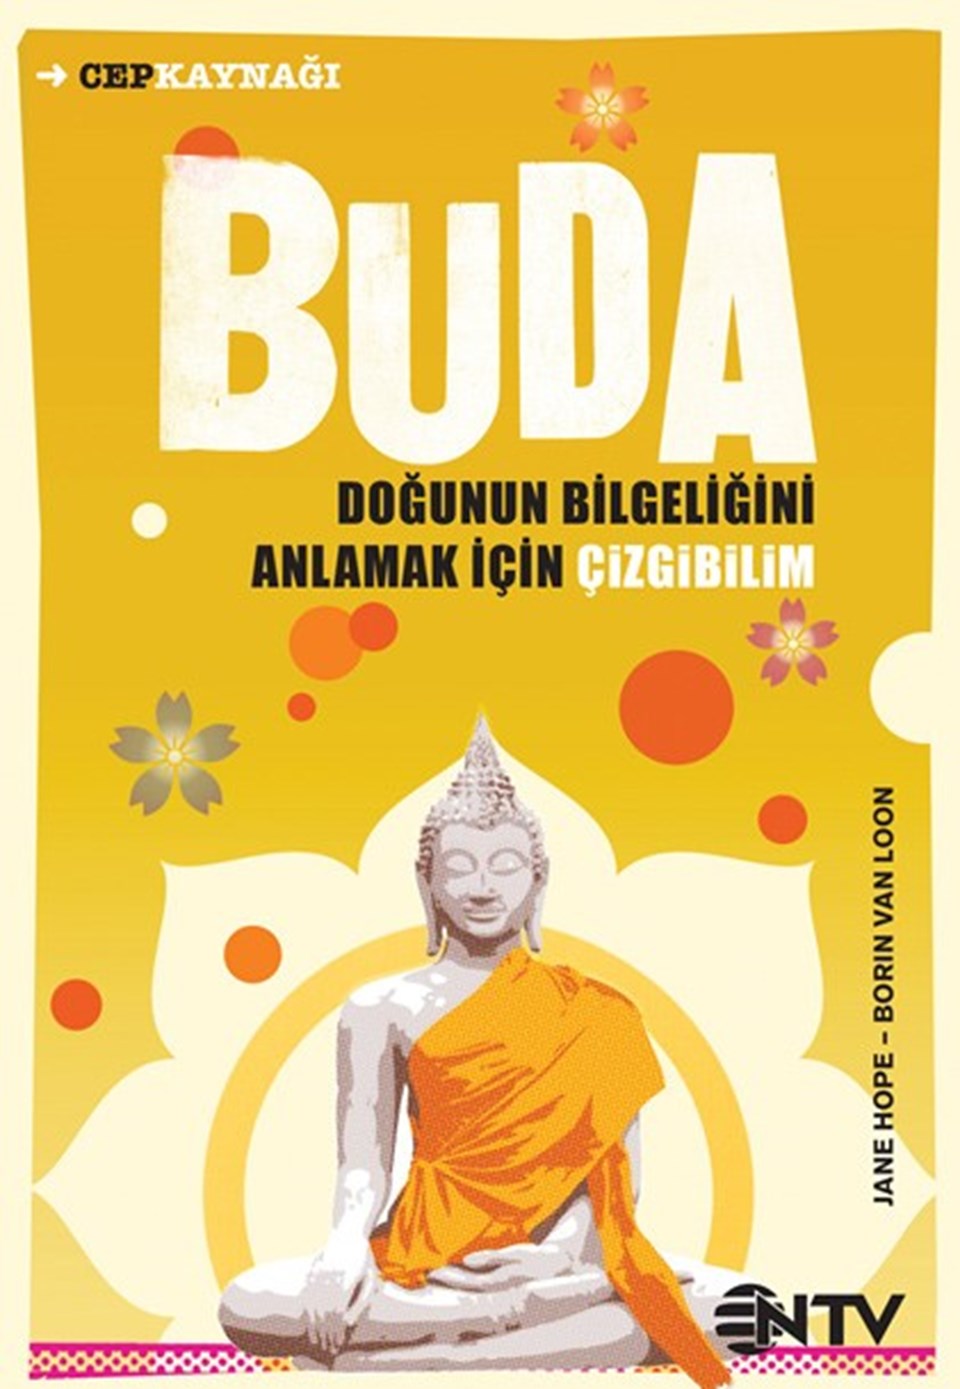 Buda; Doğunun bilgeliğini anlamak için çizgibilim - 1